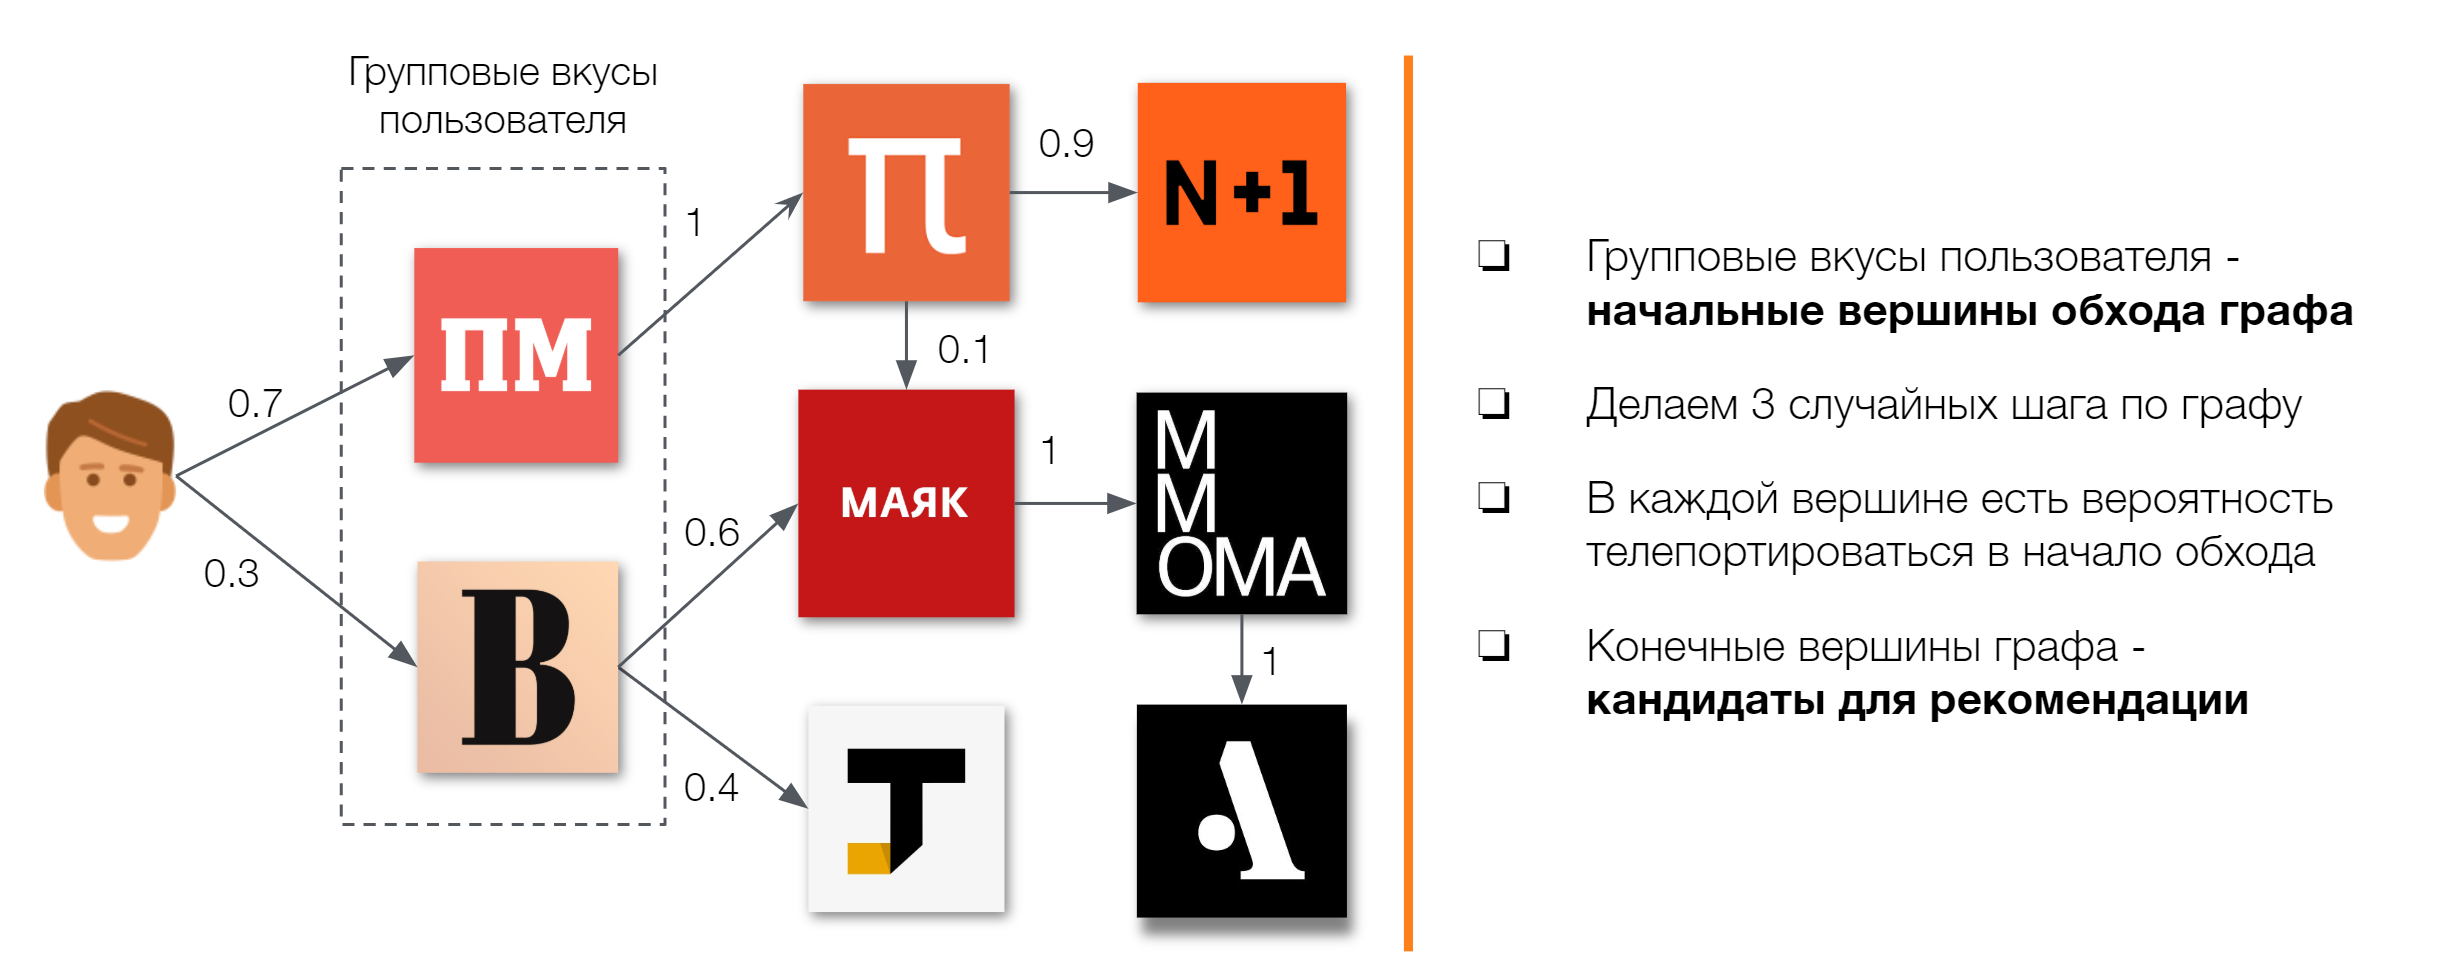 Графовые рекомендации групп в Одноклассниках - 3